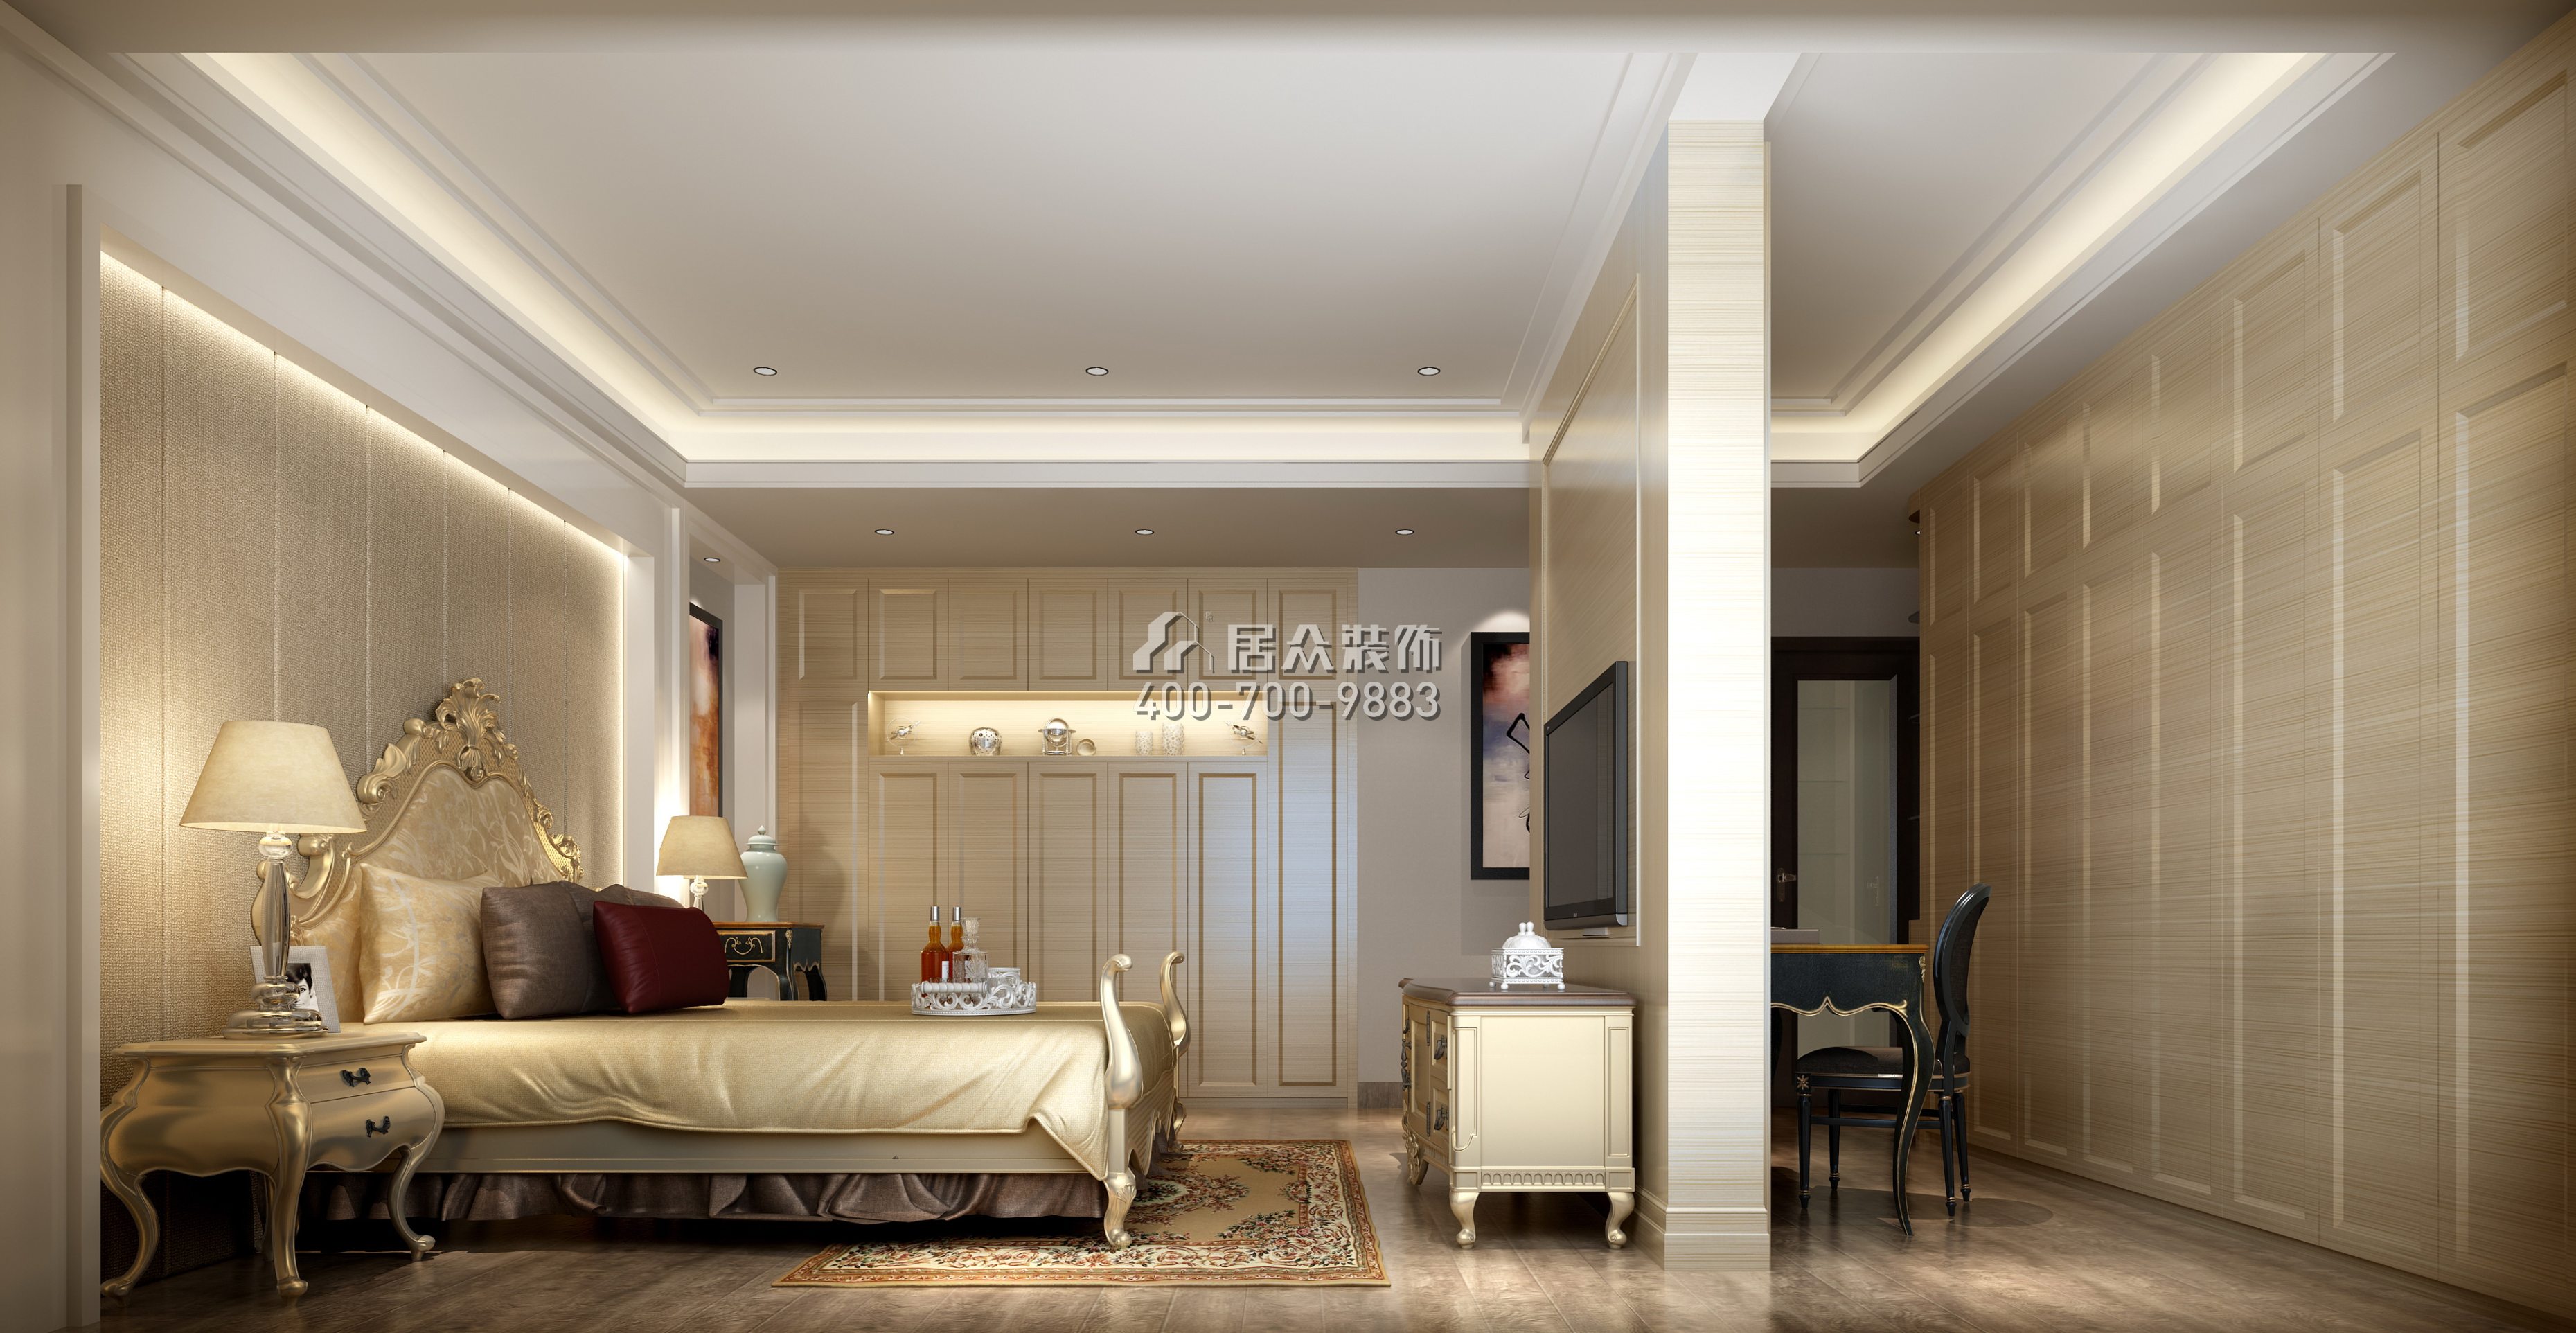 黄埔雅苑二期268平方米新古典风格复式户型卧室装修效果图